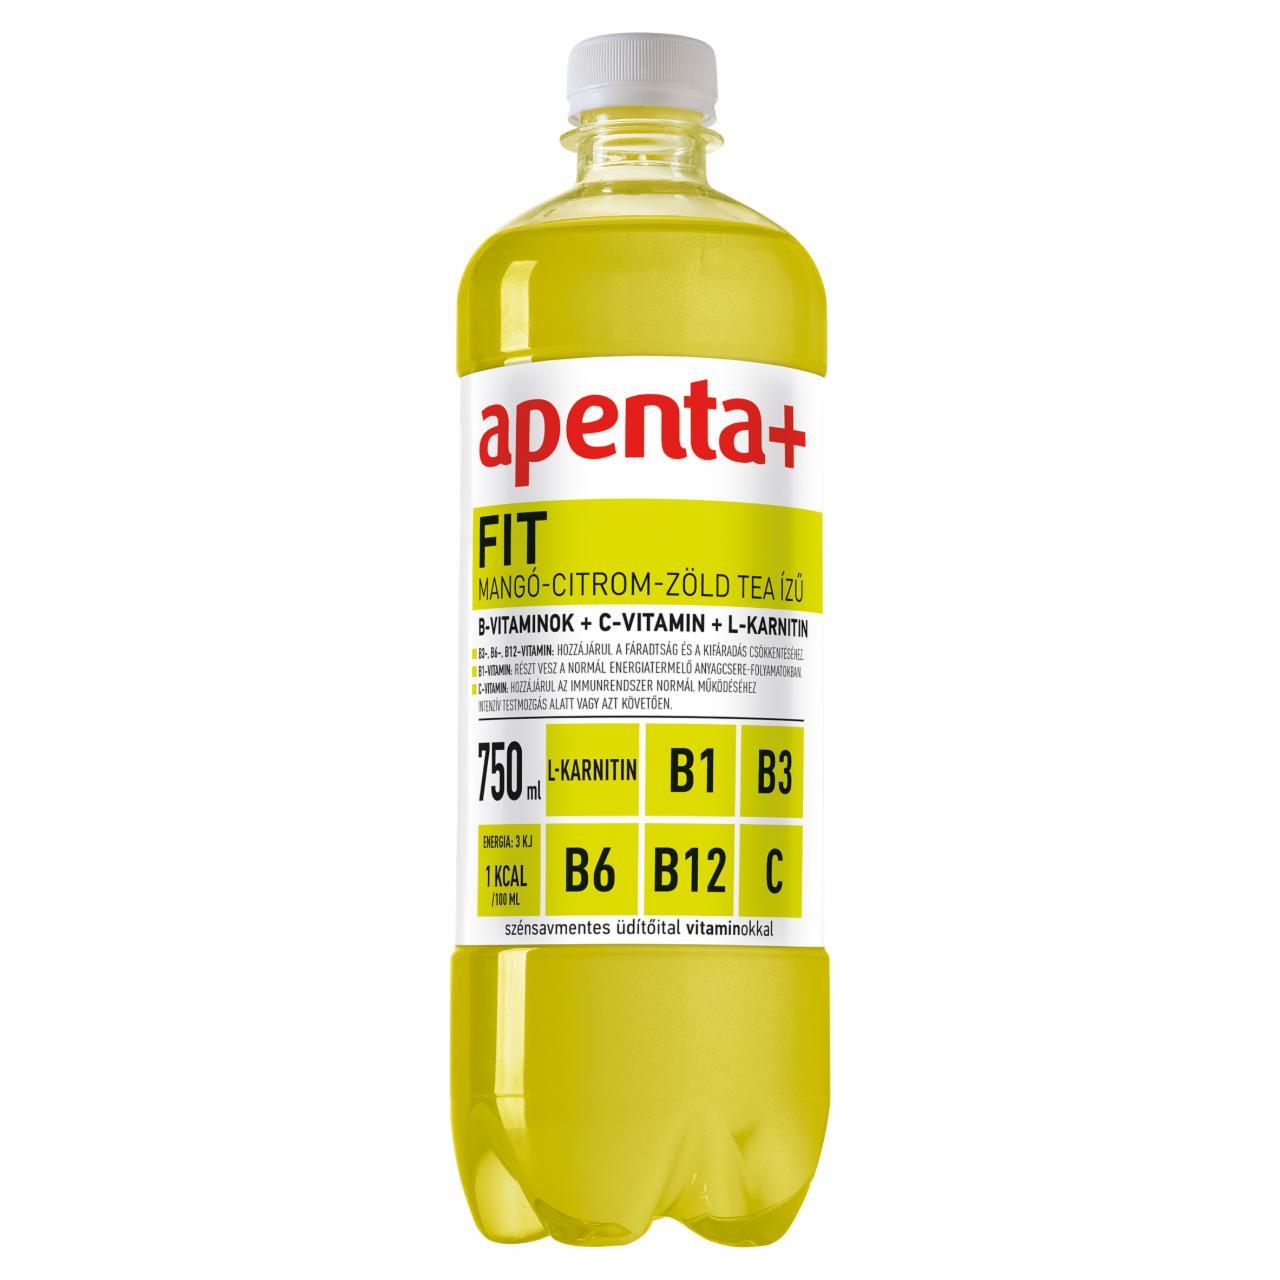 Képek - Apenta+ Fit mangó-citrom-zöld tea ízű szénsavmentes energiamentes üdítőital vitaminokal 750 ml